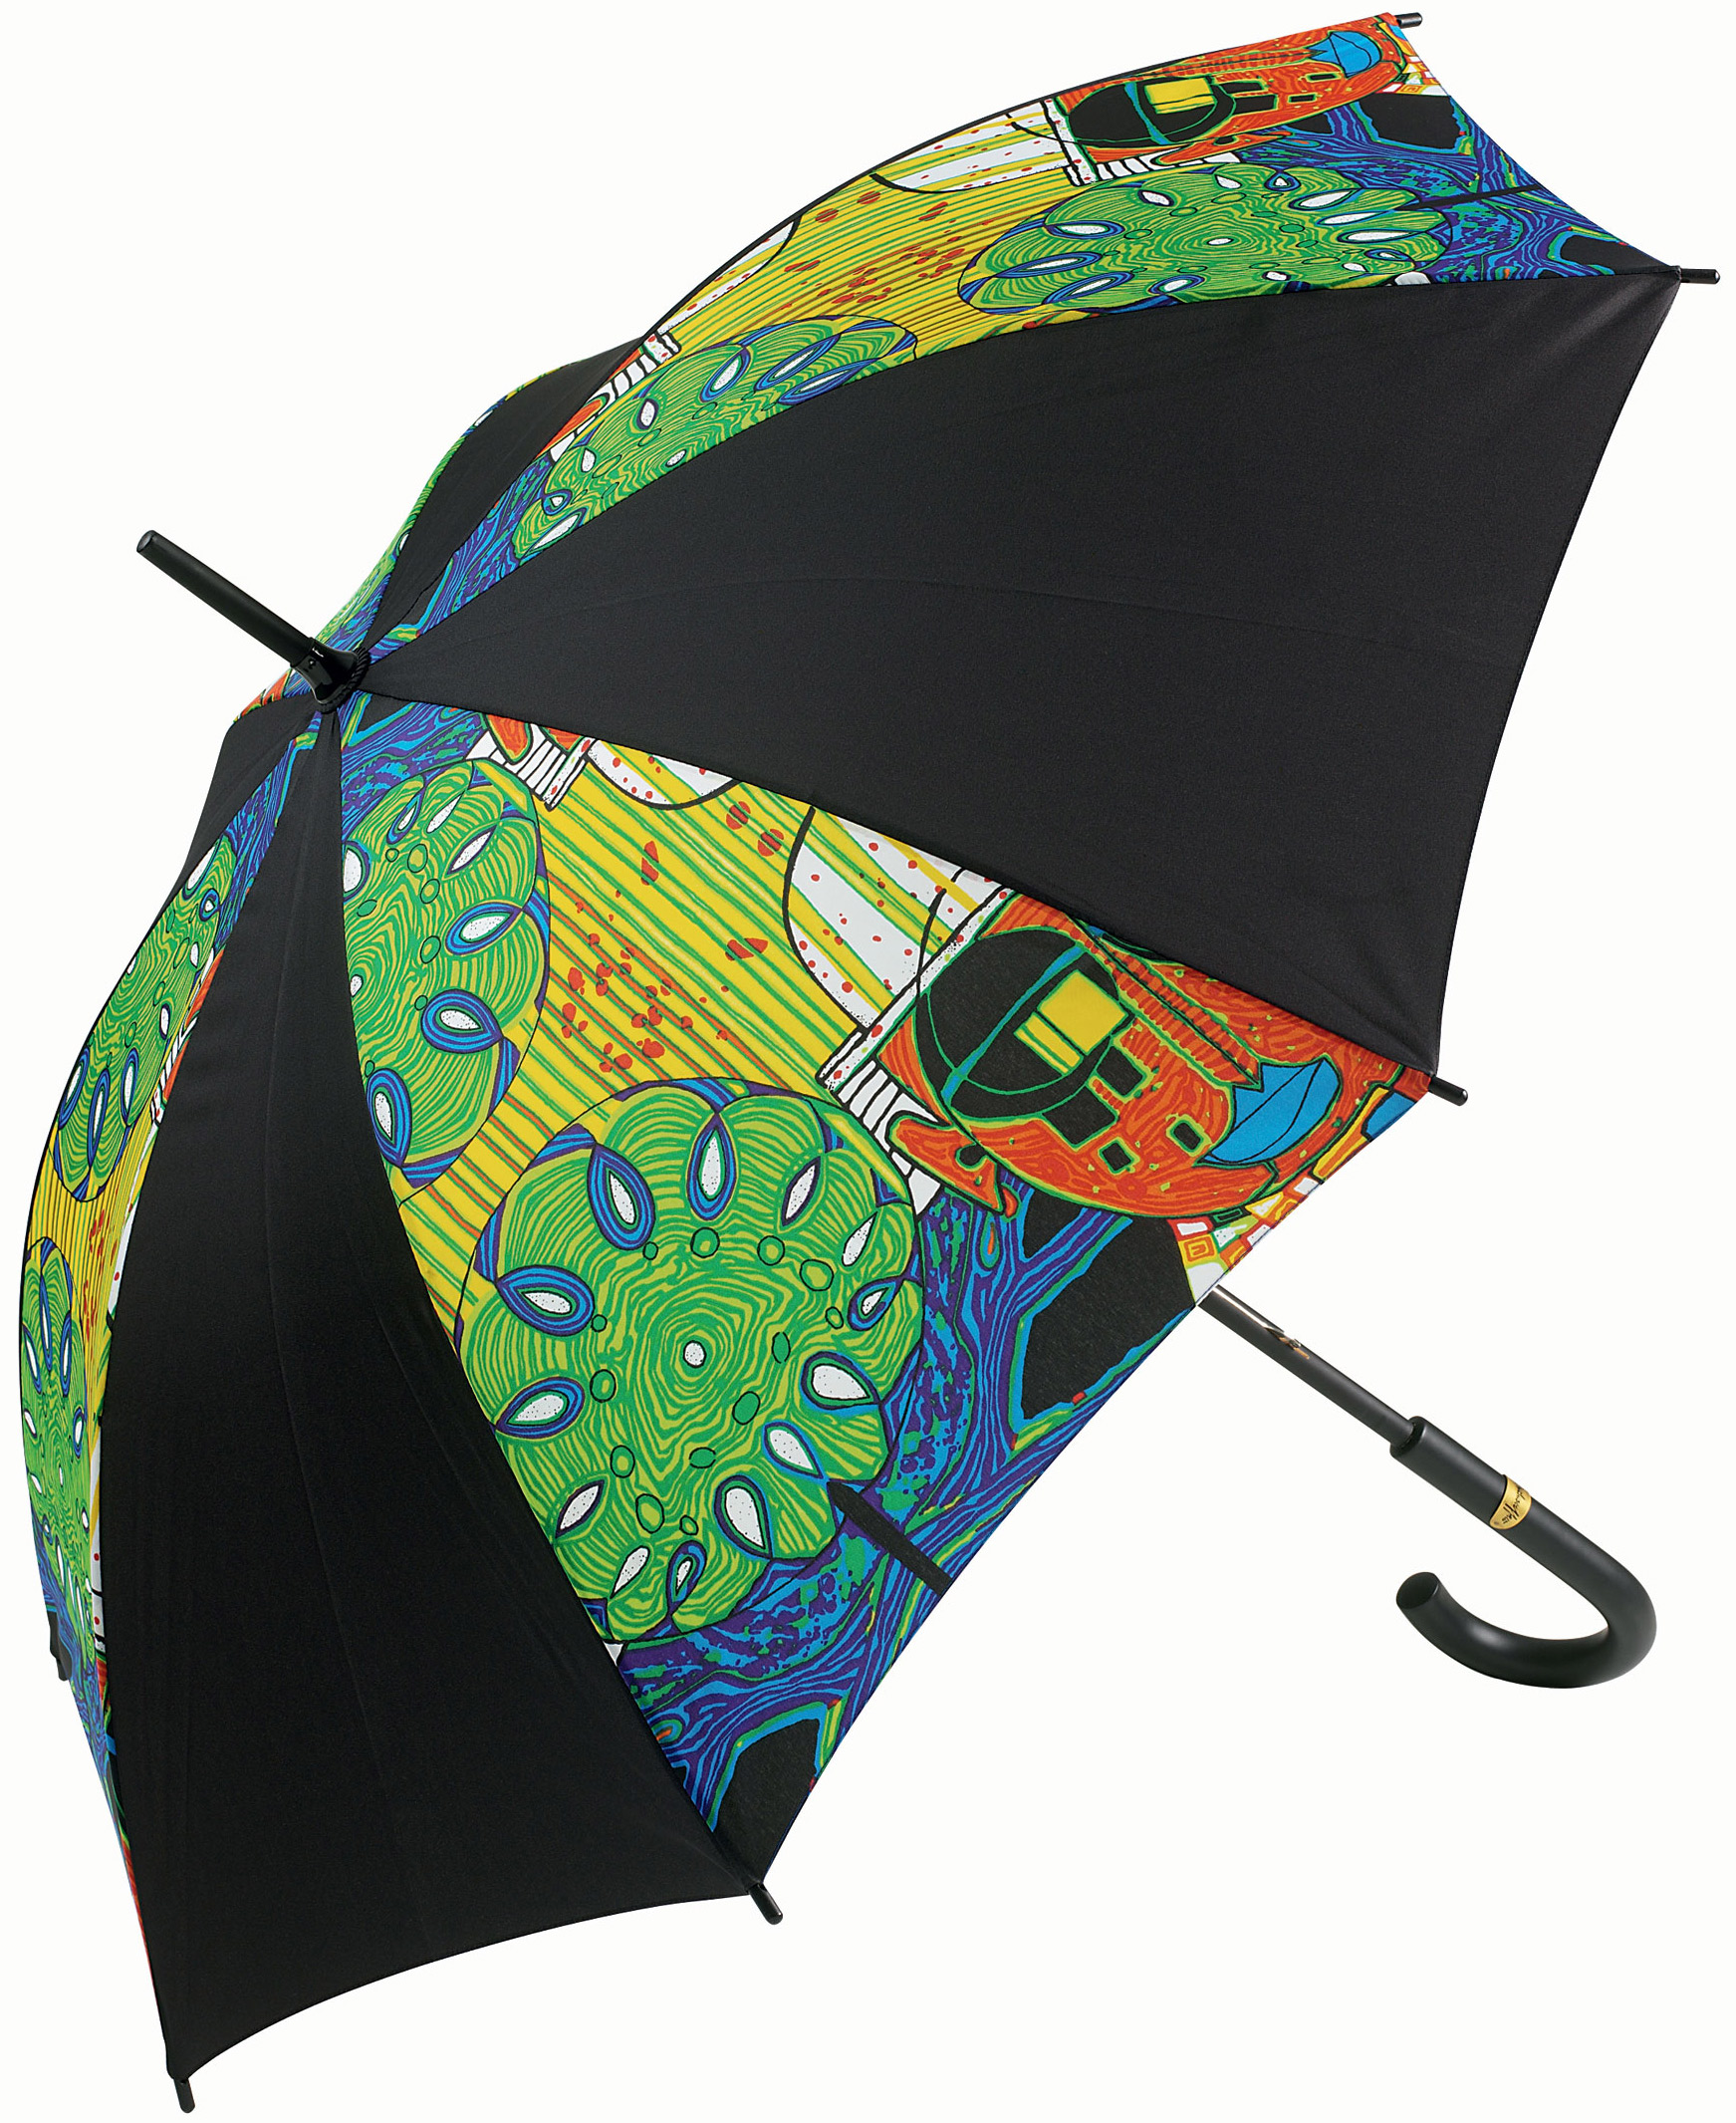 (887) Stick umbrella "Tropical Chinese" by Friedensreich Hundertwasser